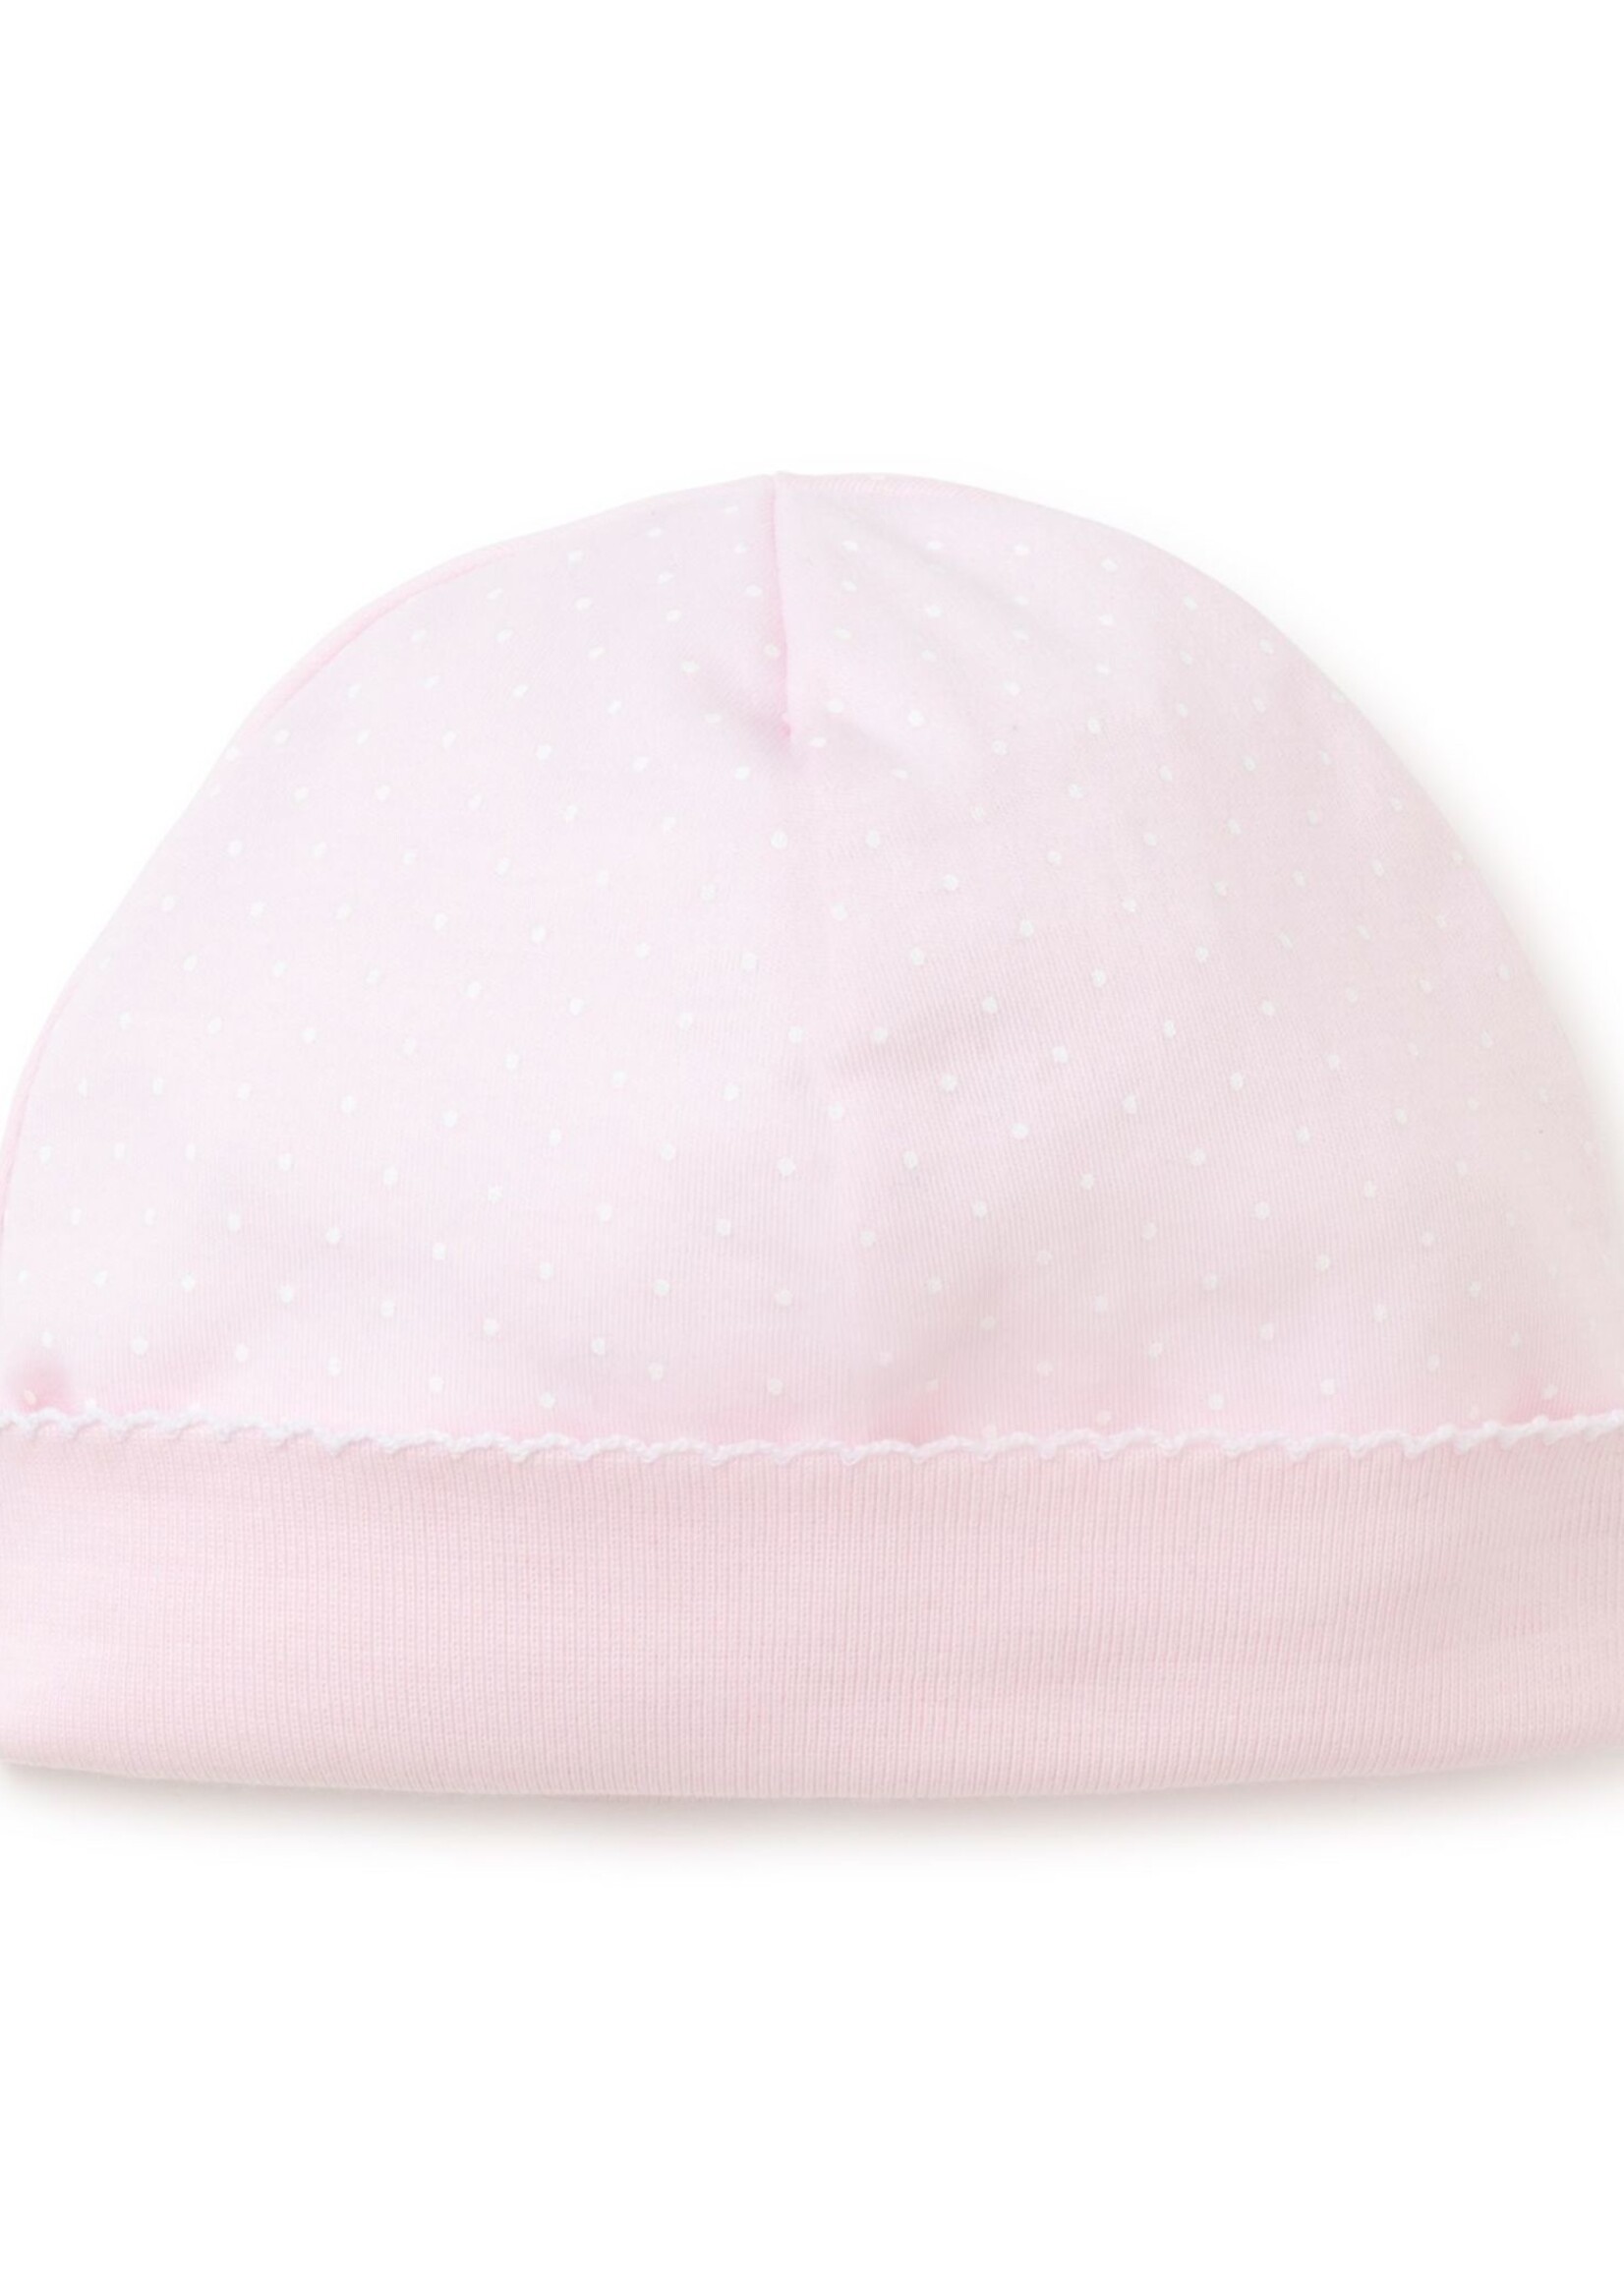 Kissy Kissy Pink w/ White Dots Hat